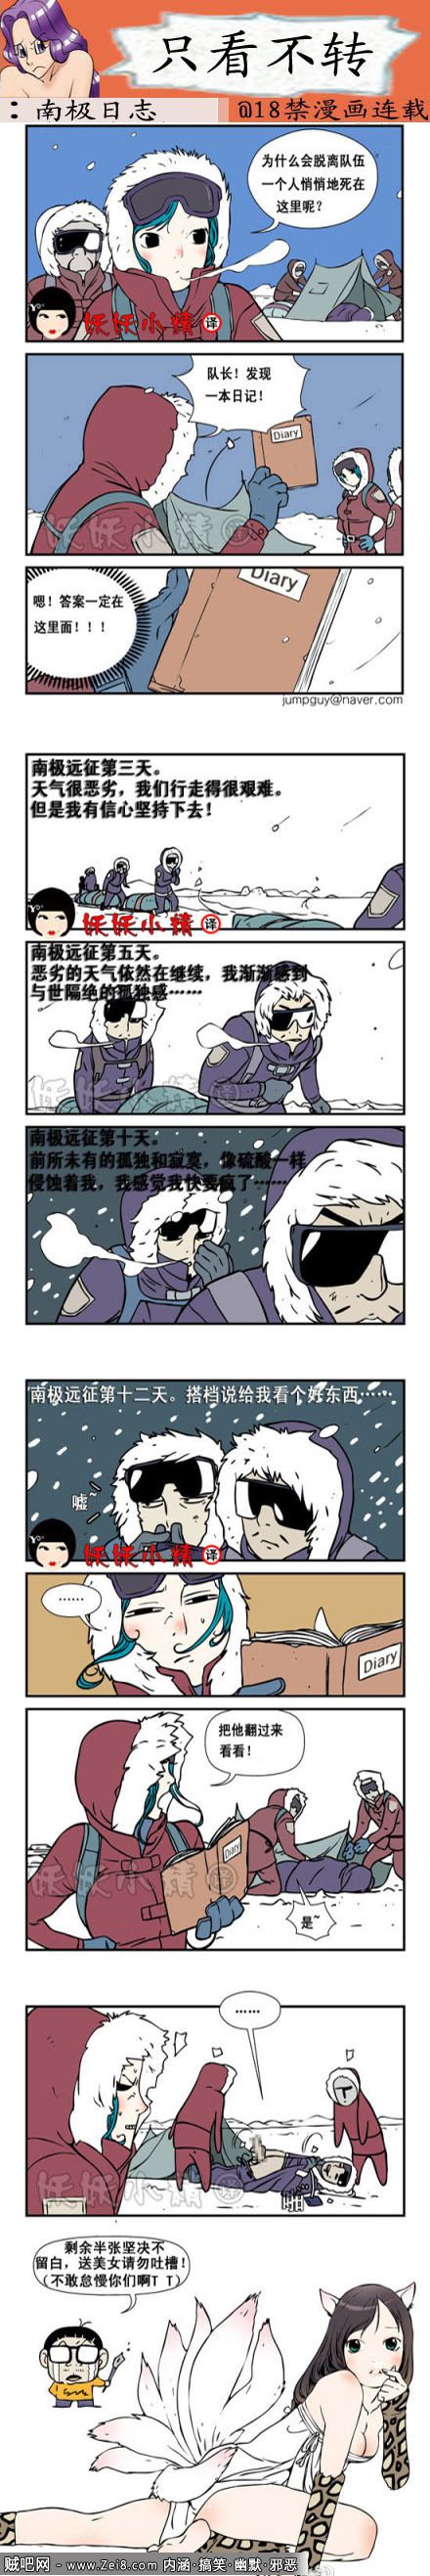 [韩国雪地邪恶漫画]：南极科考队